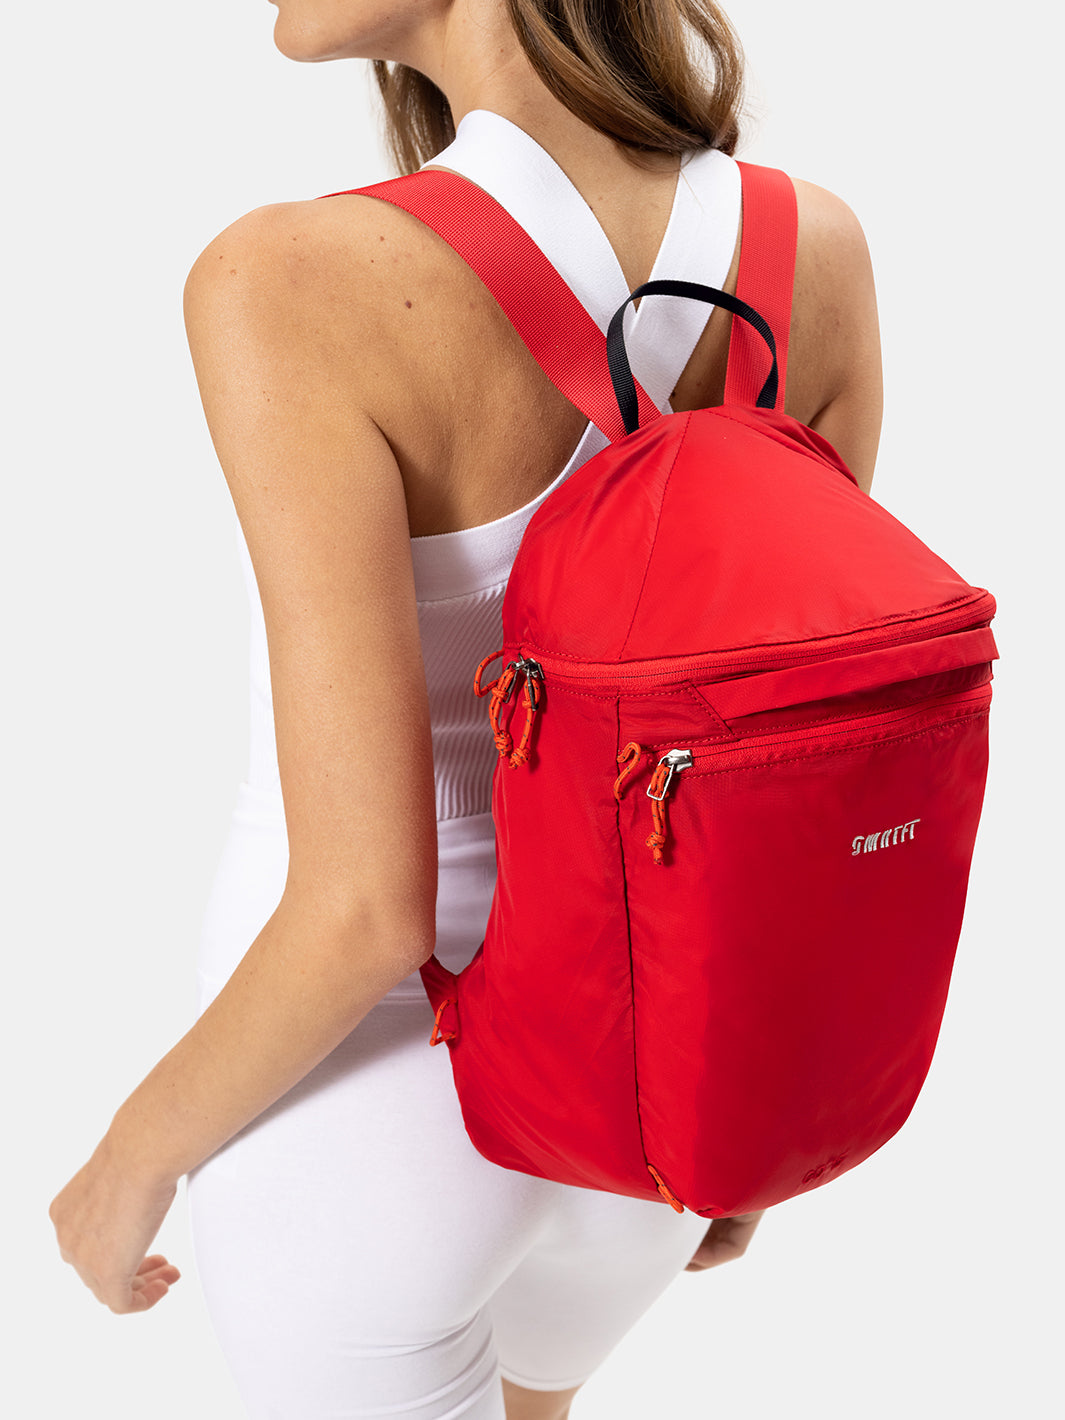 Women's Backpack | Red SMRTFT Backpack For Women 